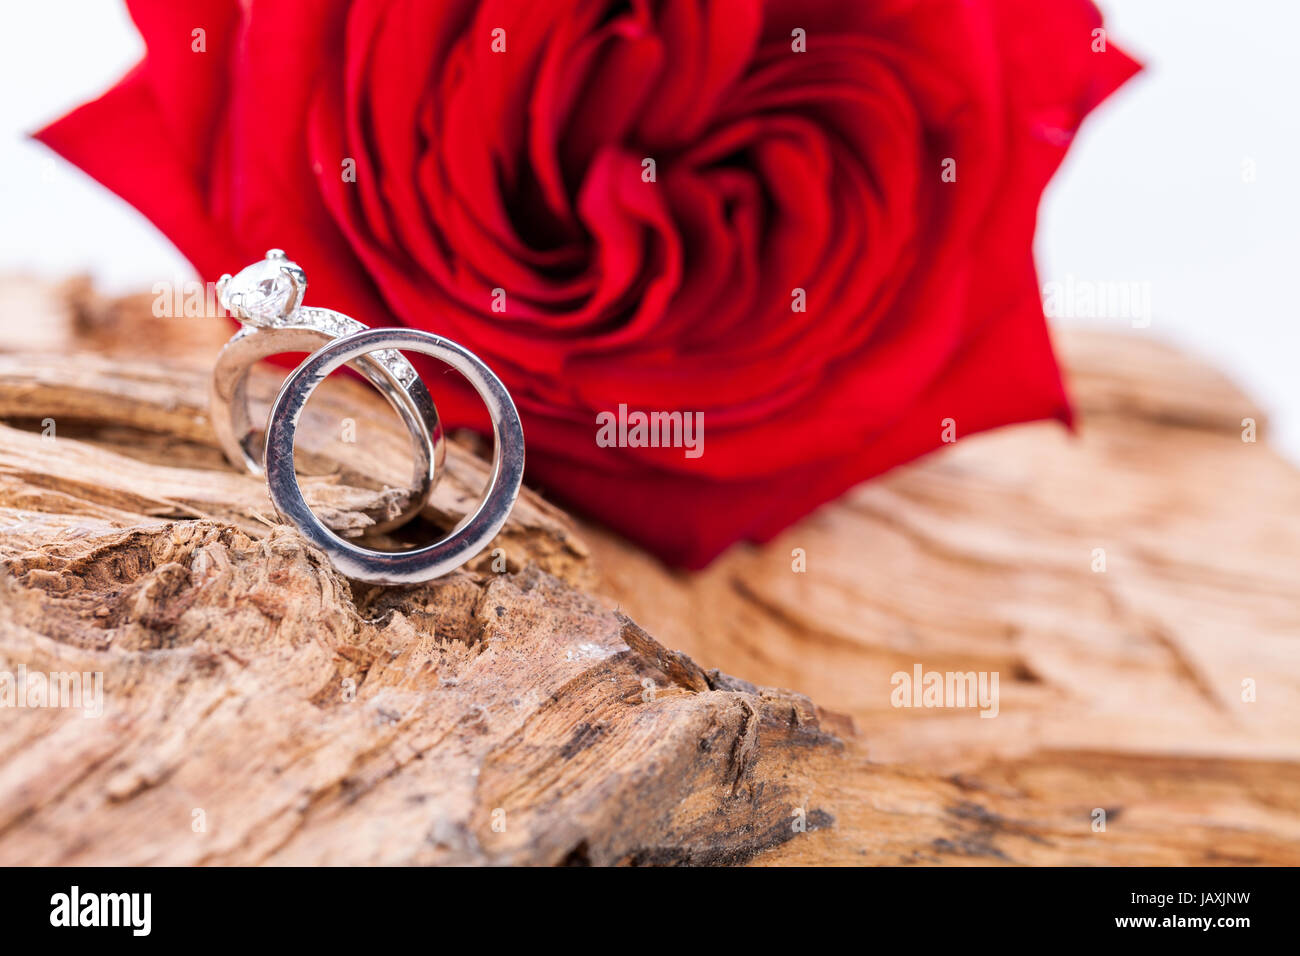 schöne rote rose und diamant ring schmuck auf treibholz hintergrund makro nahaufnahme detail Stock Photo